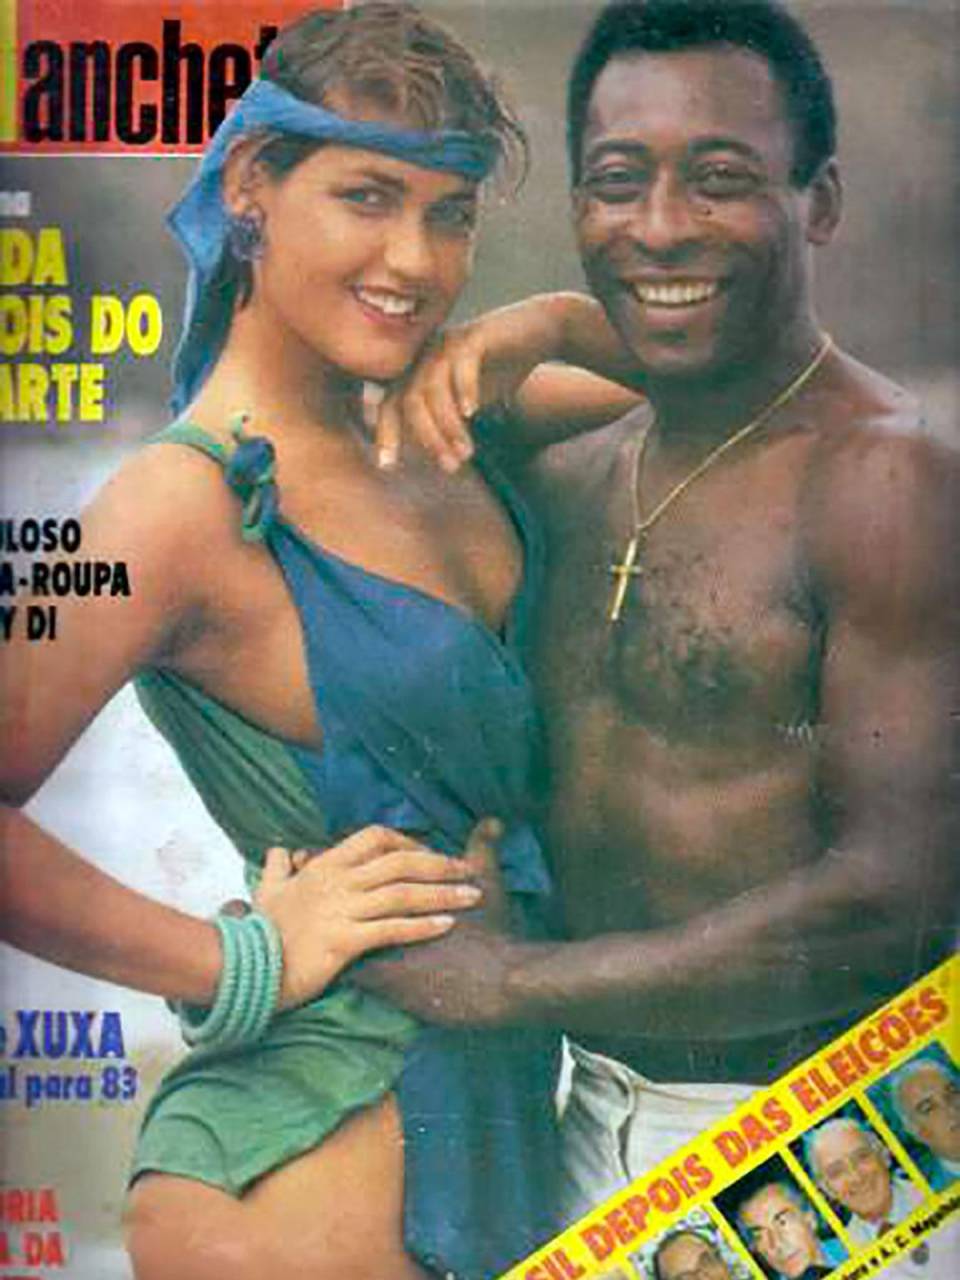 Pelé y Xuxa fueron la pareja mas buscada por los medios brasileños.